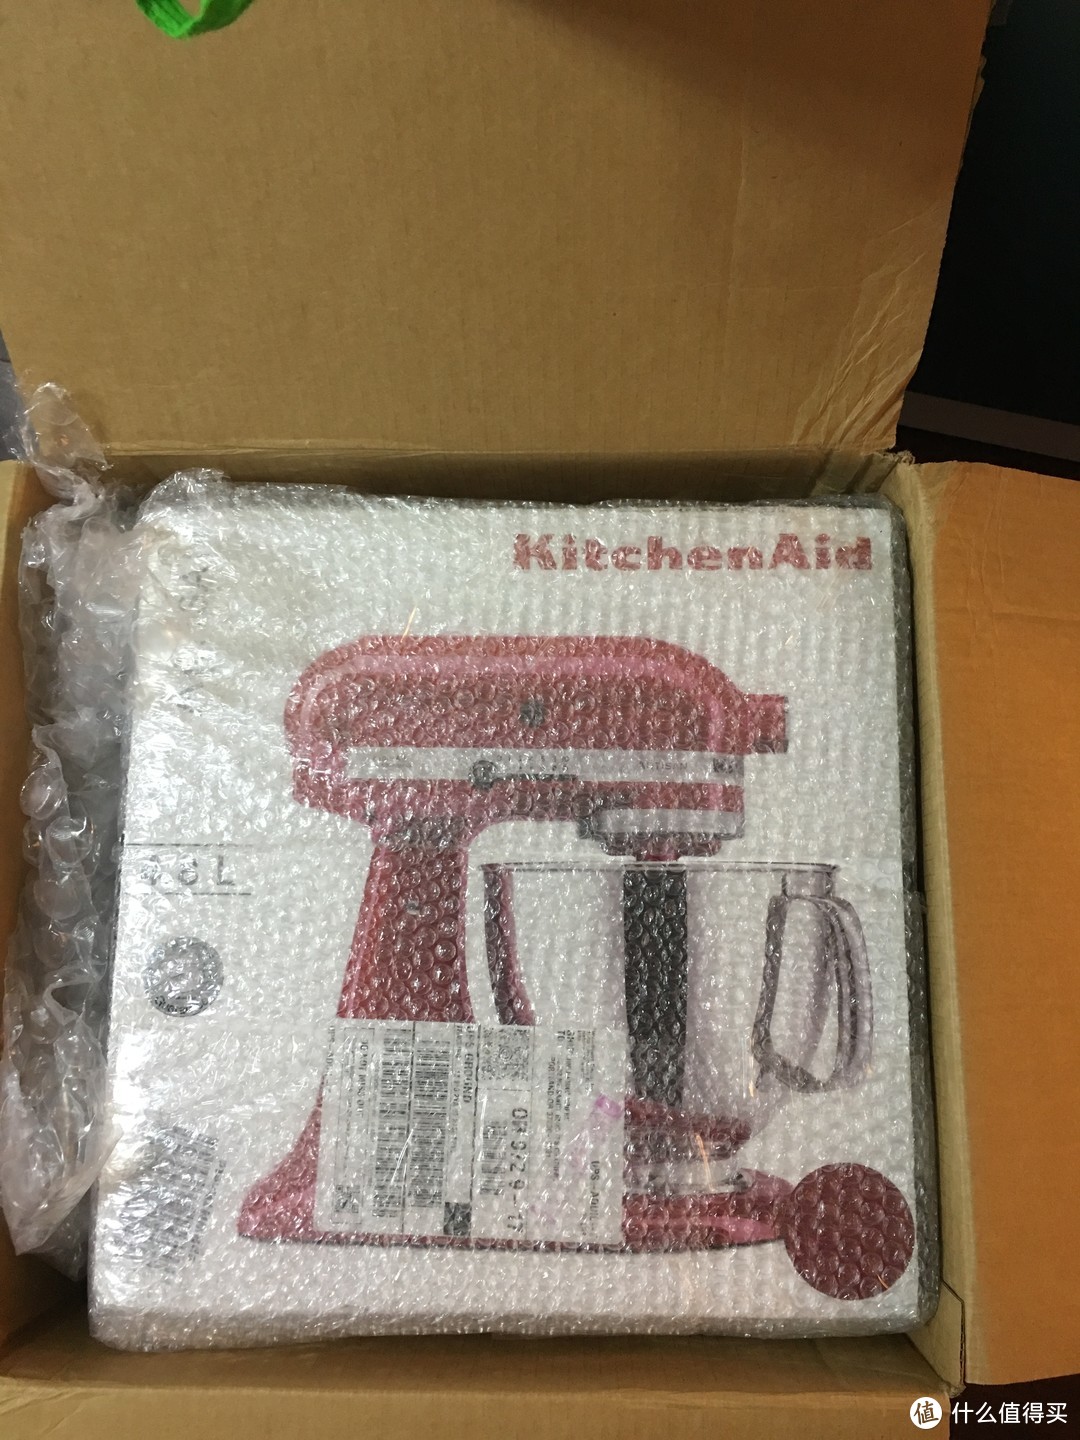 第一次在美亚买二手货—Kitchenaid 5ksm150ps 厨师机开箱